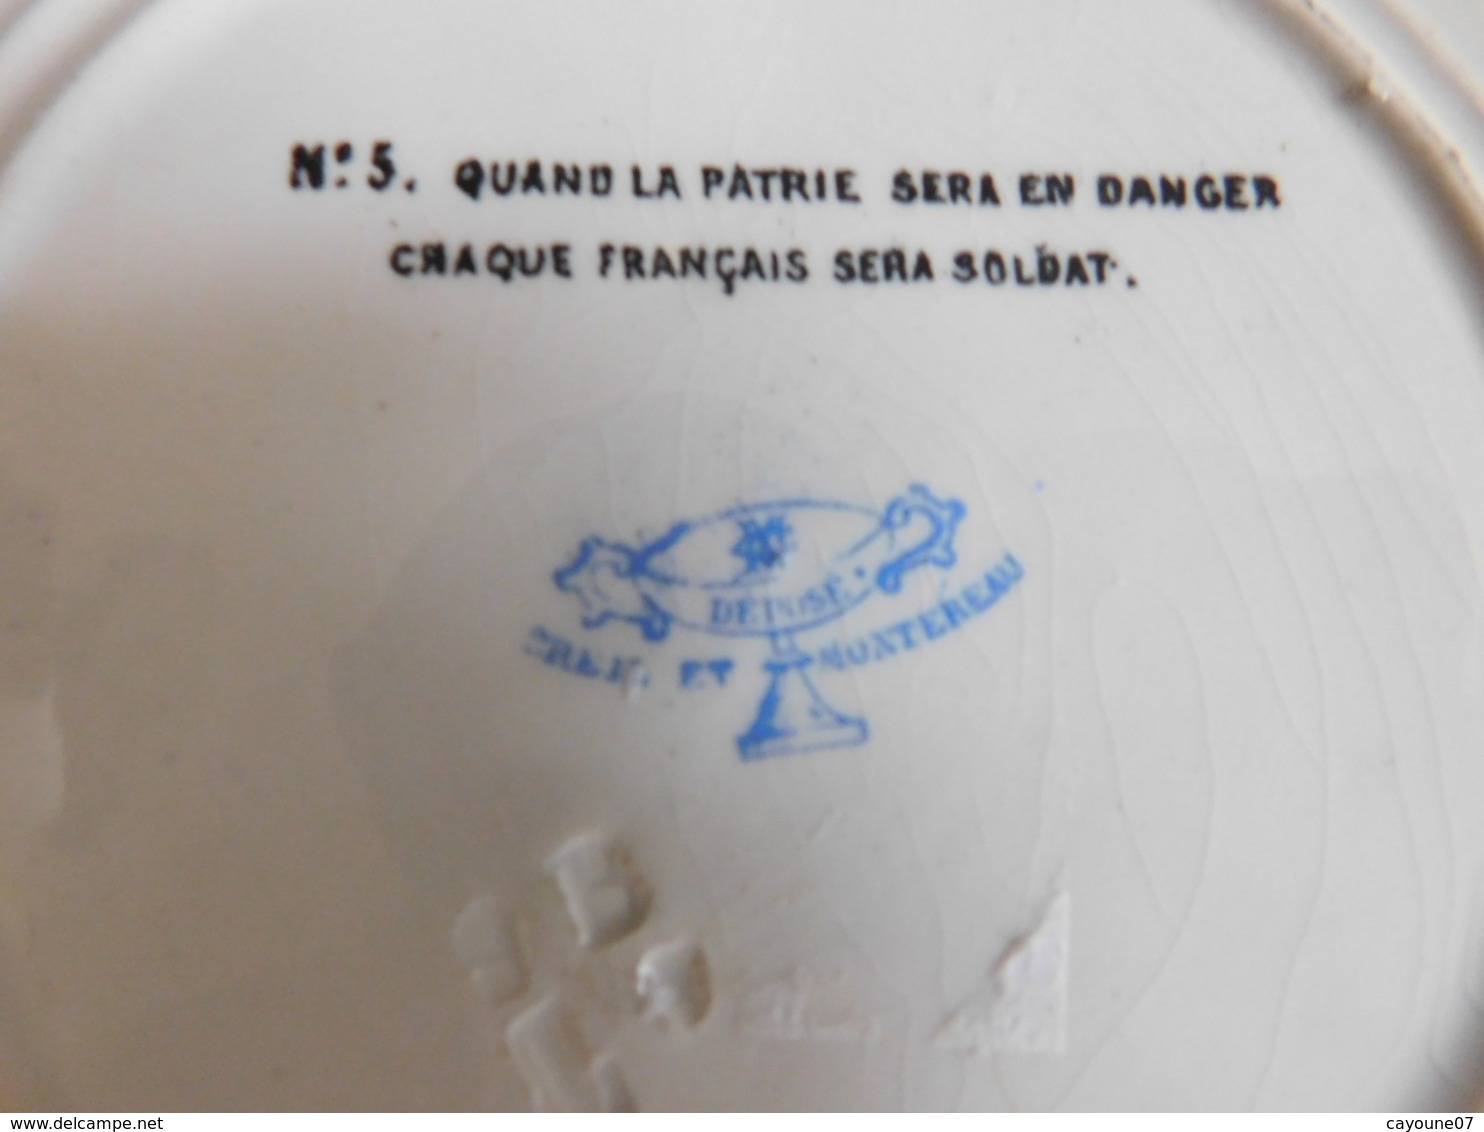 Assiette parlante  rébus numéro 5 Creil & Montereau Quand la patrie....1884/1920